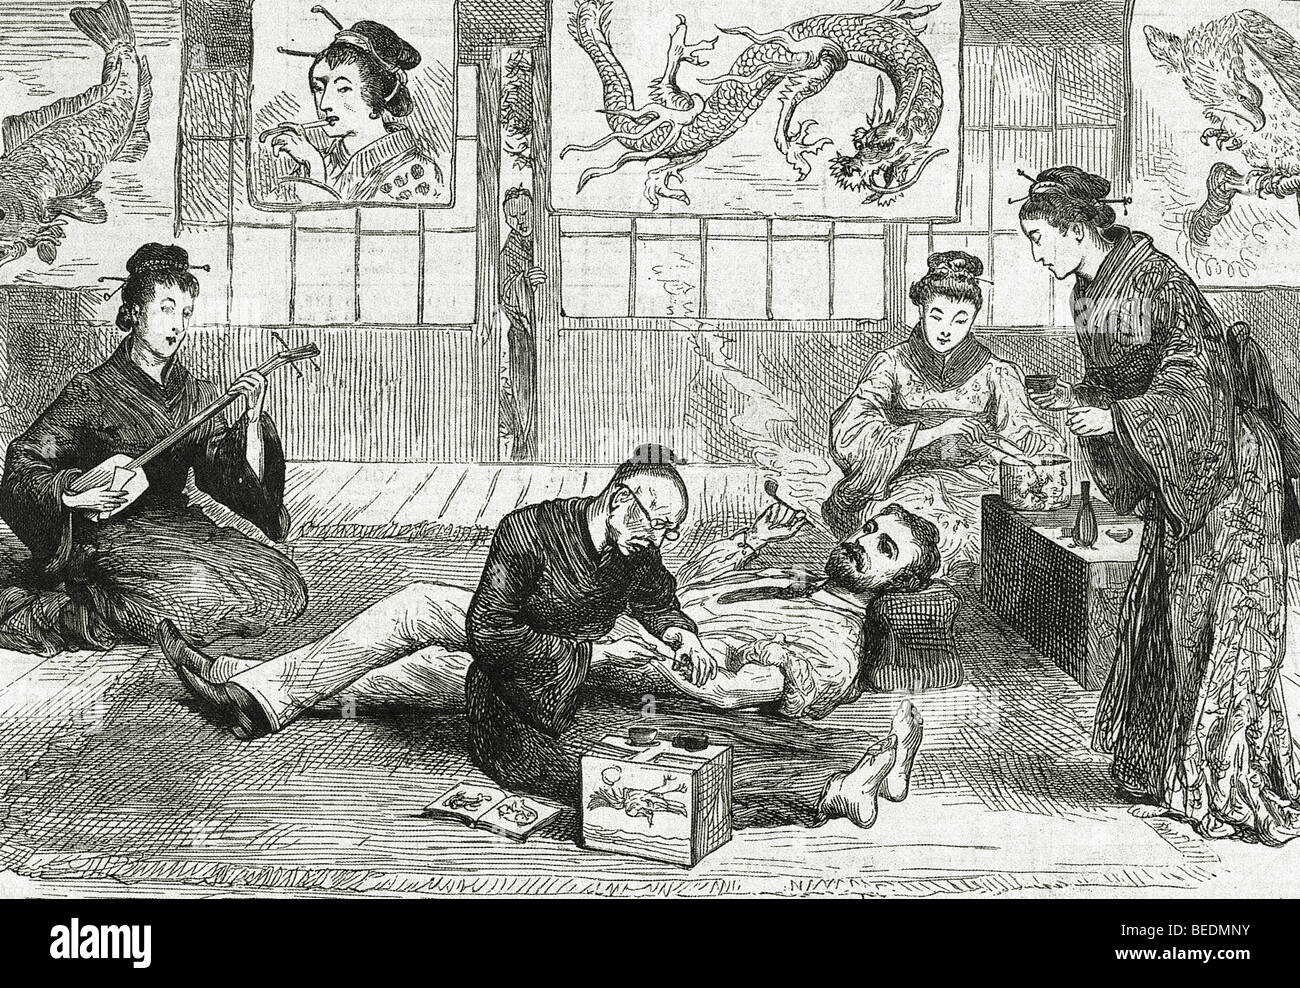 TATTOING un visitatore europeo a Nagasaki, in Giappone, nel 1882 mentre un musicista suona e due geishe preparare tè Foto Stock